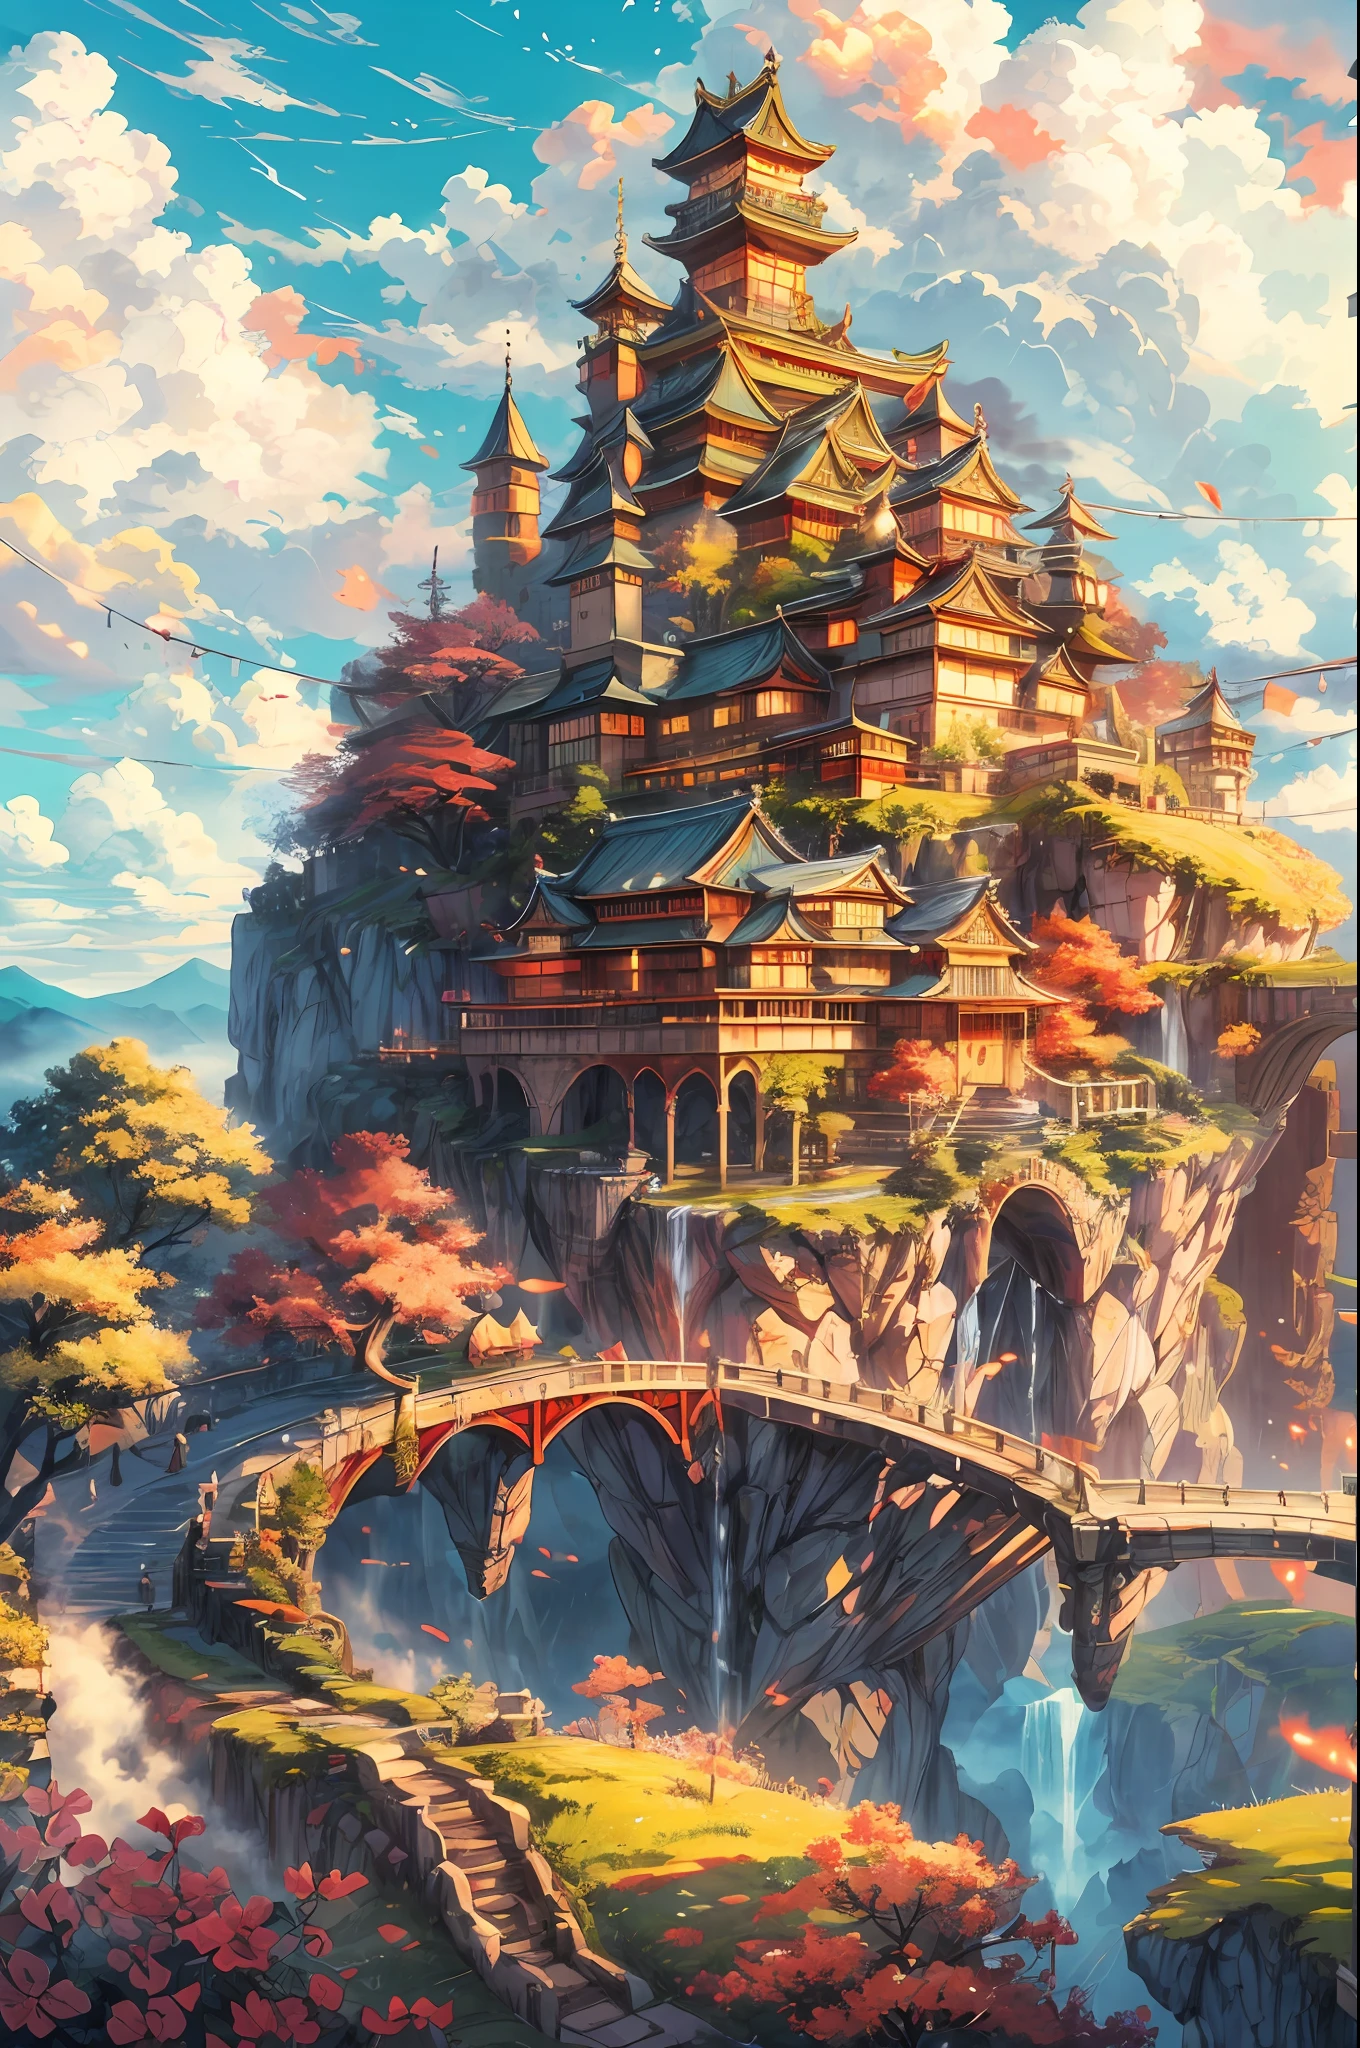 "قلعة مهيبة تطفو على جزيرة السماء, تذكرنا بقلعة على الطراز الياباني, معلقة فوق السحب الرقيقة, الفرح في وهج الشمس الدافئة, تشع الألوان النابضة بالحياة. تحفة."